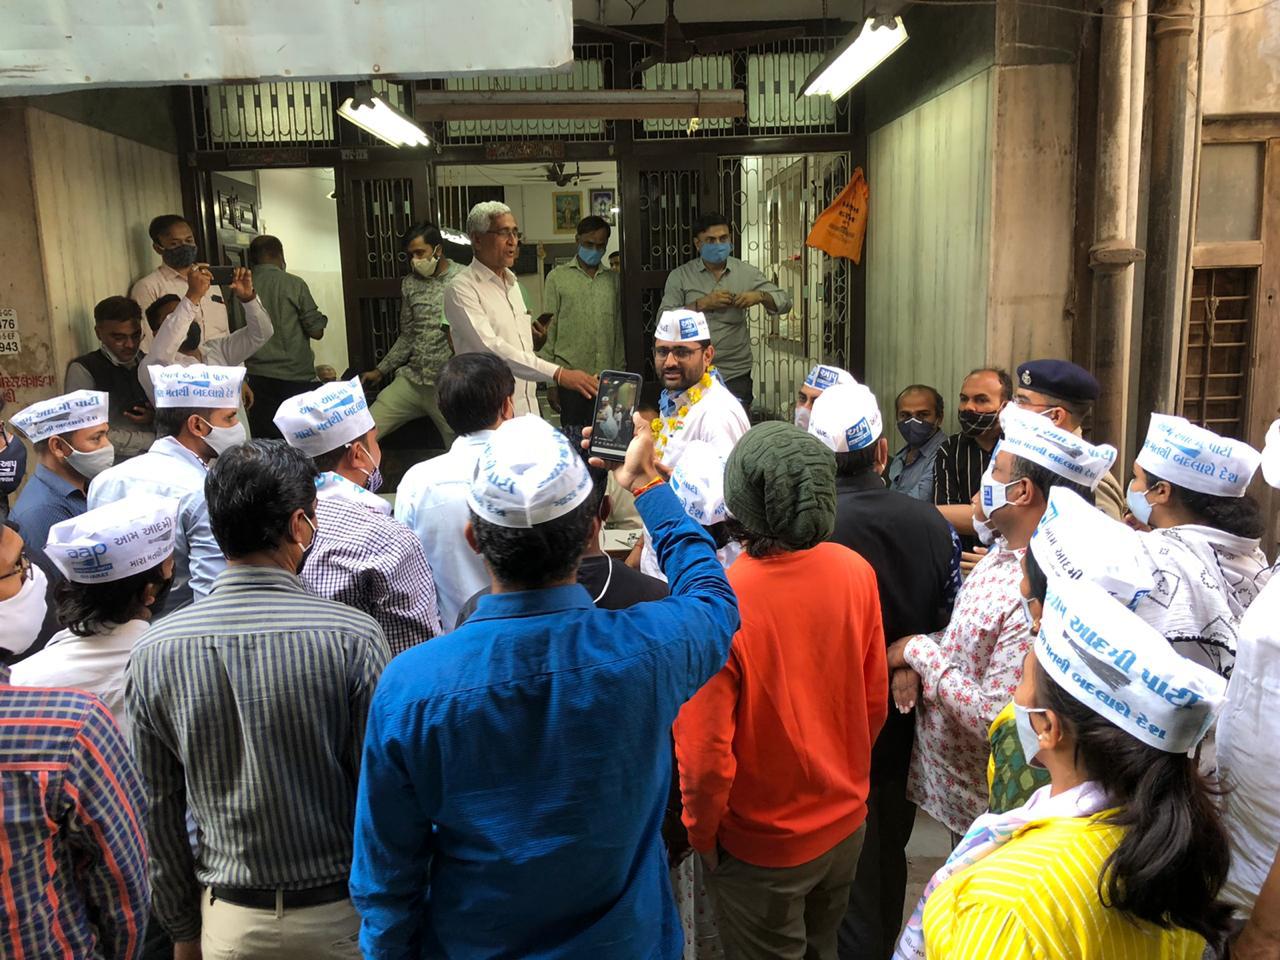 હીરાબજારમાં ડાયમંડ વેપારીઓની રજૂઆત સાંભળવા AAP ગુજરાત પ્રદેશ પ્રમુખ ઇટાળીયાની અટકાયત